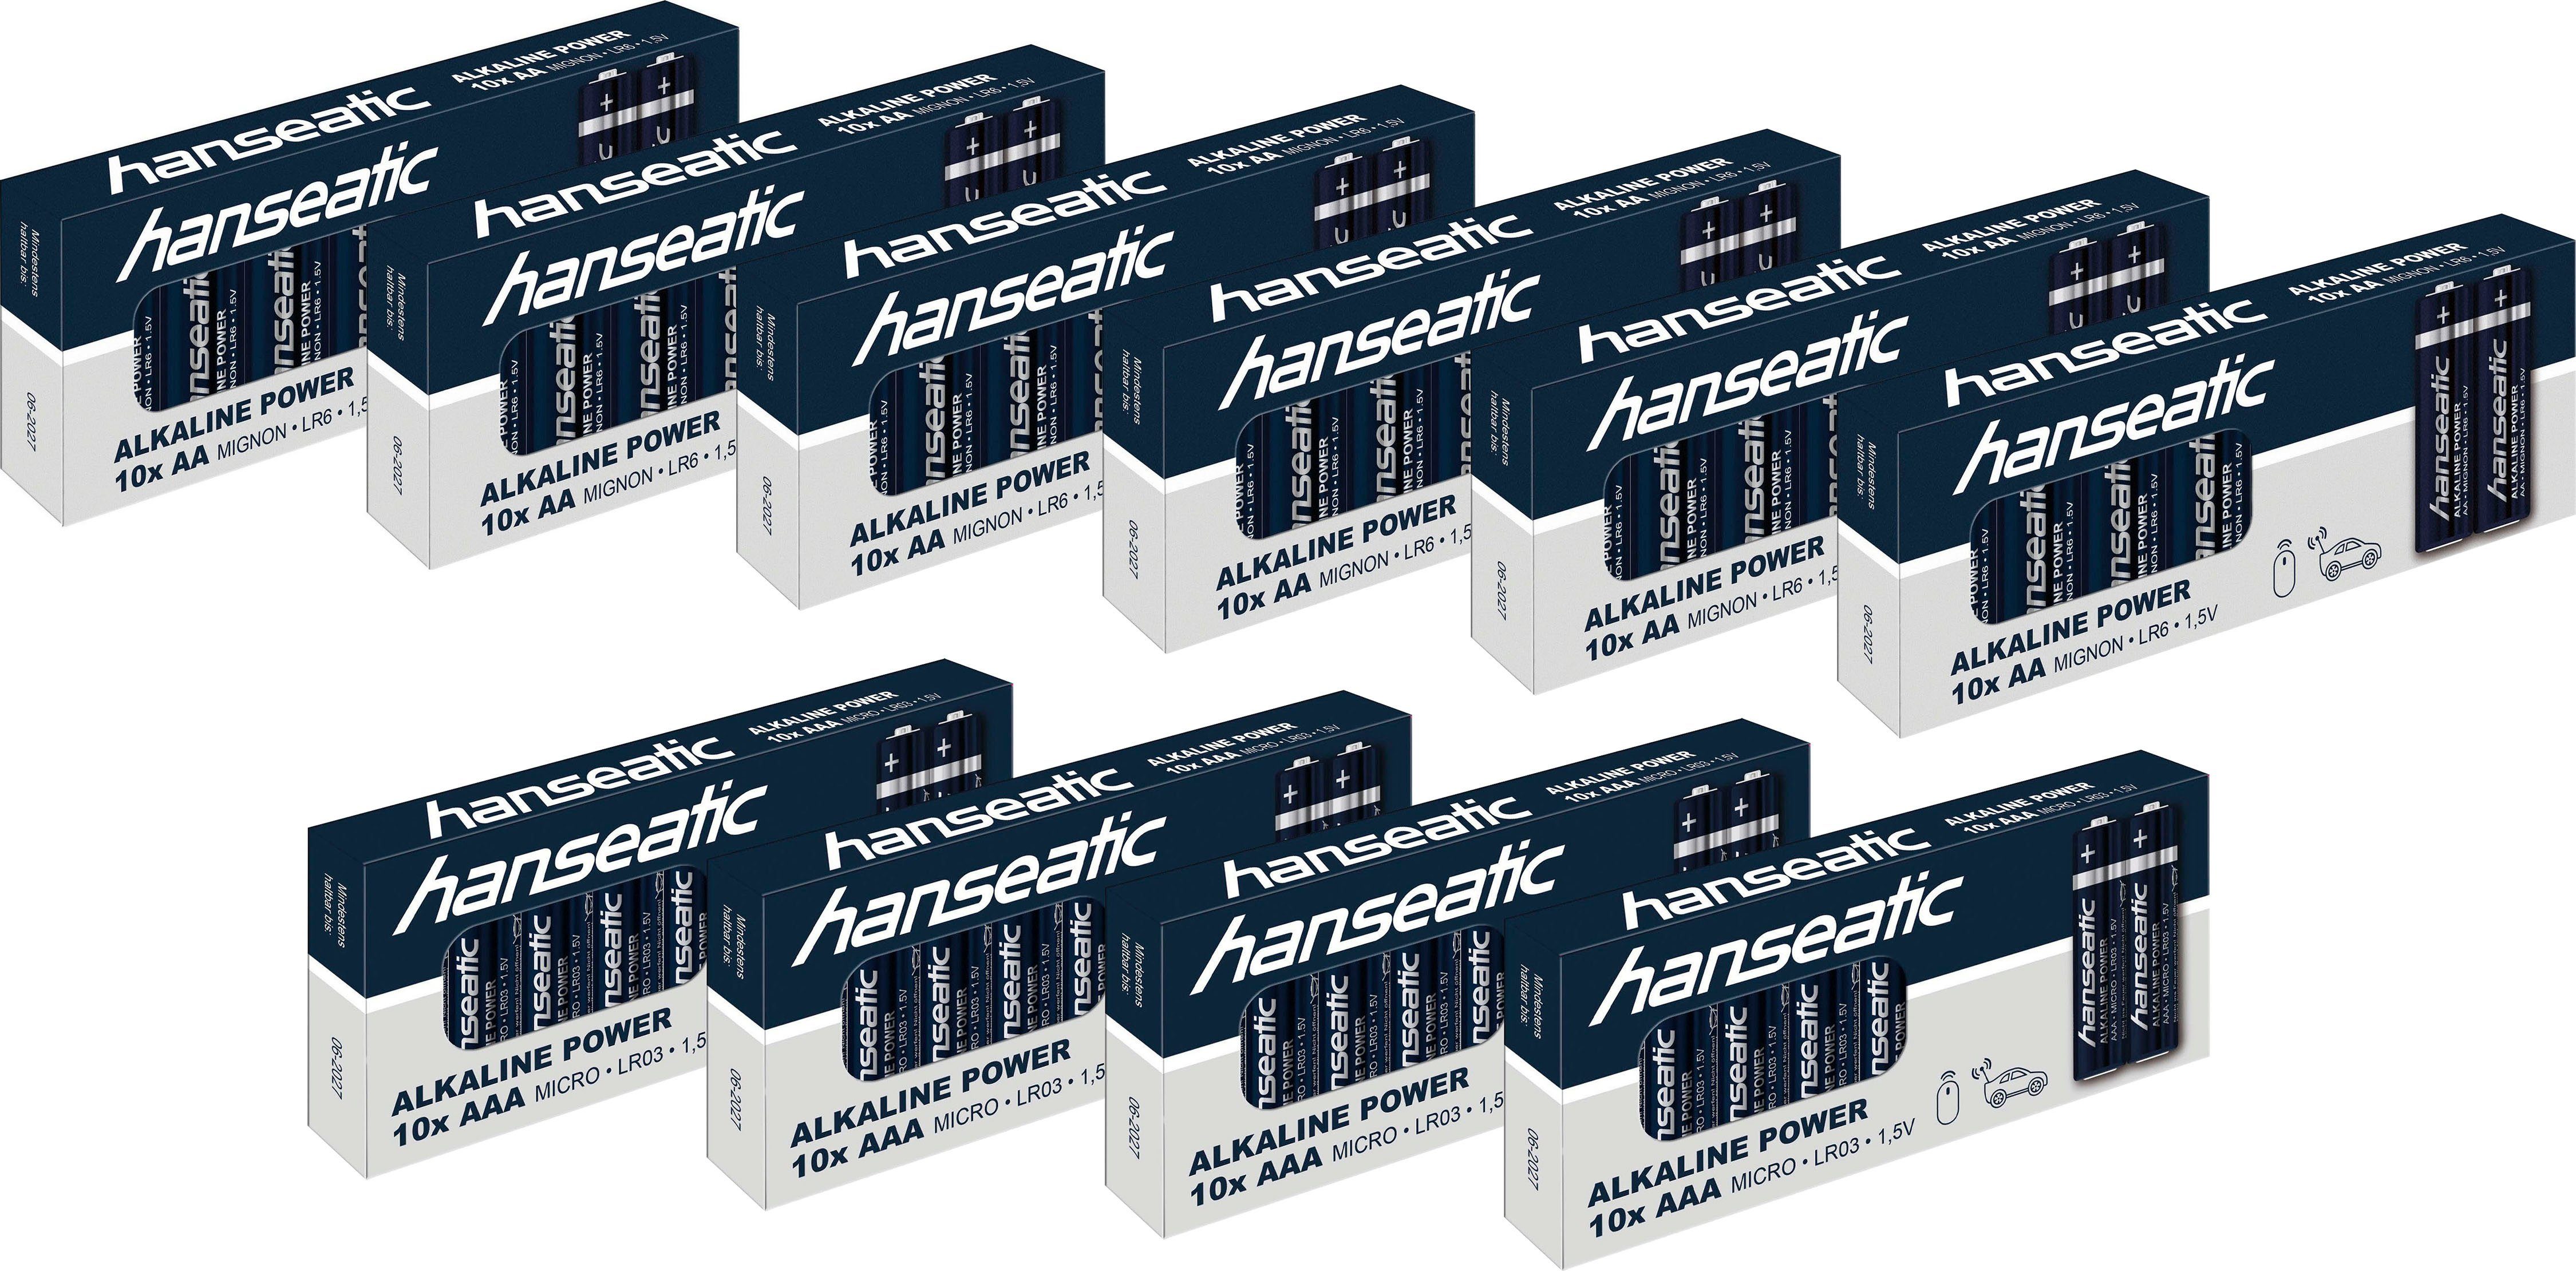 Hanseatic Batterie Set 60 Stück 40 + Batterie